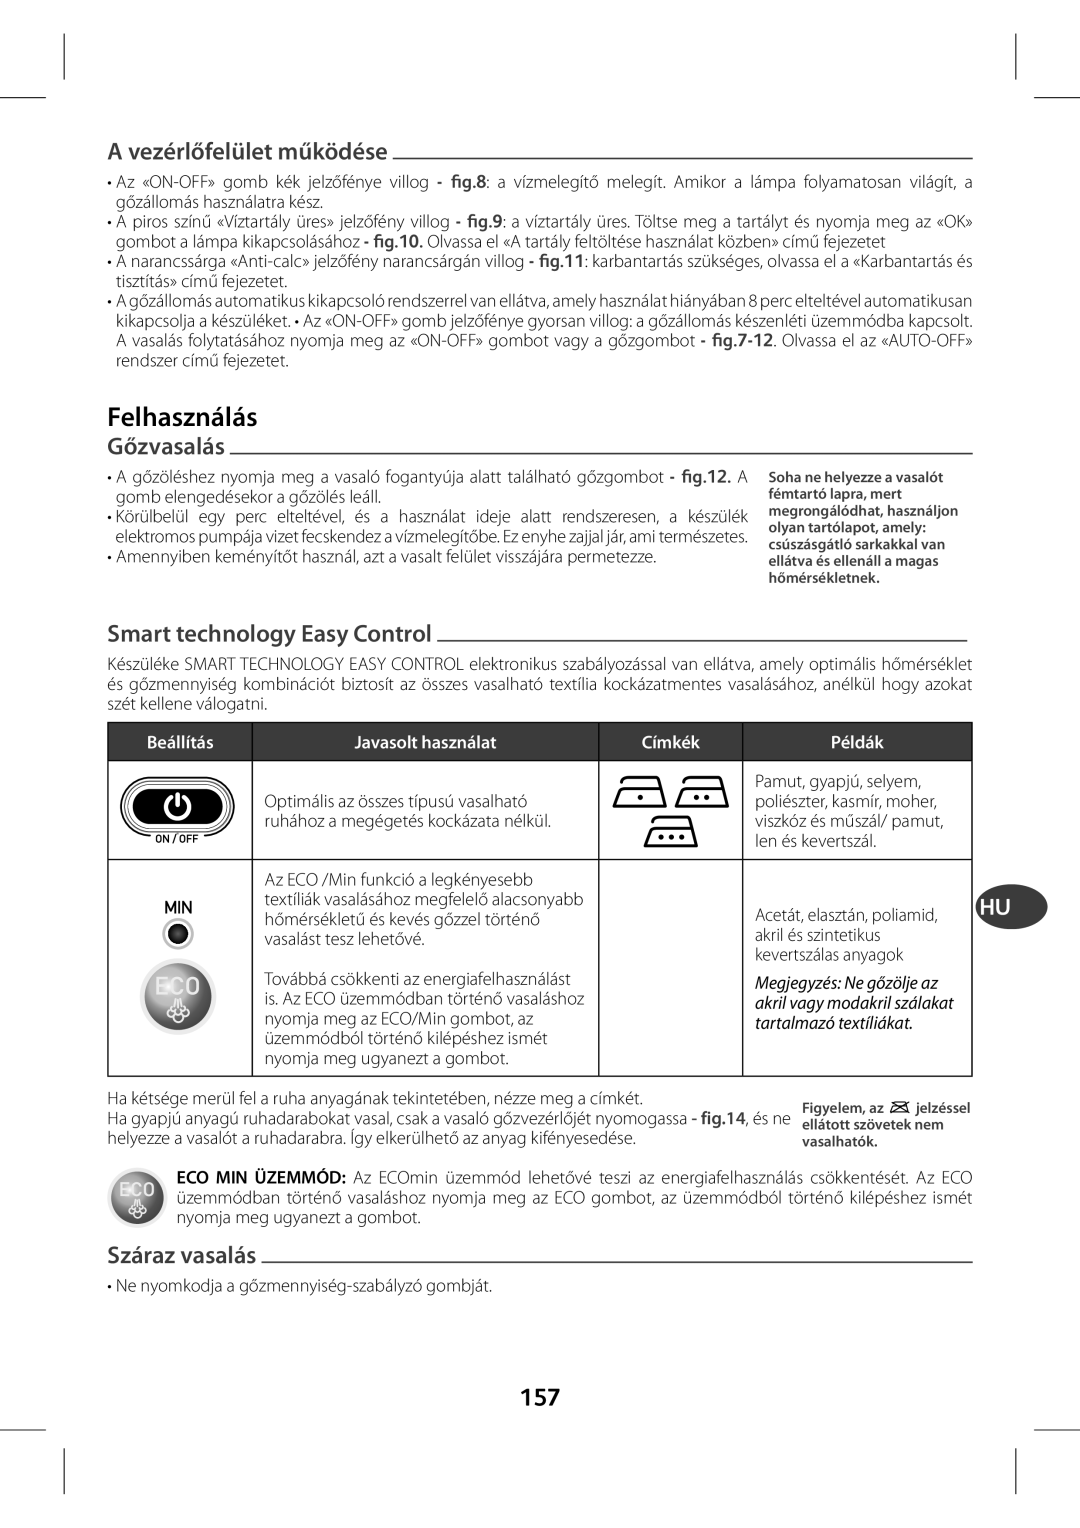 Tefal GV7630C0 manual A vezérlőfelület működése, Felhasználás, Gőzvasalás, Smart technology Easy Control, Száraz vasalás 